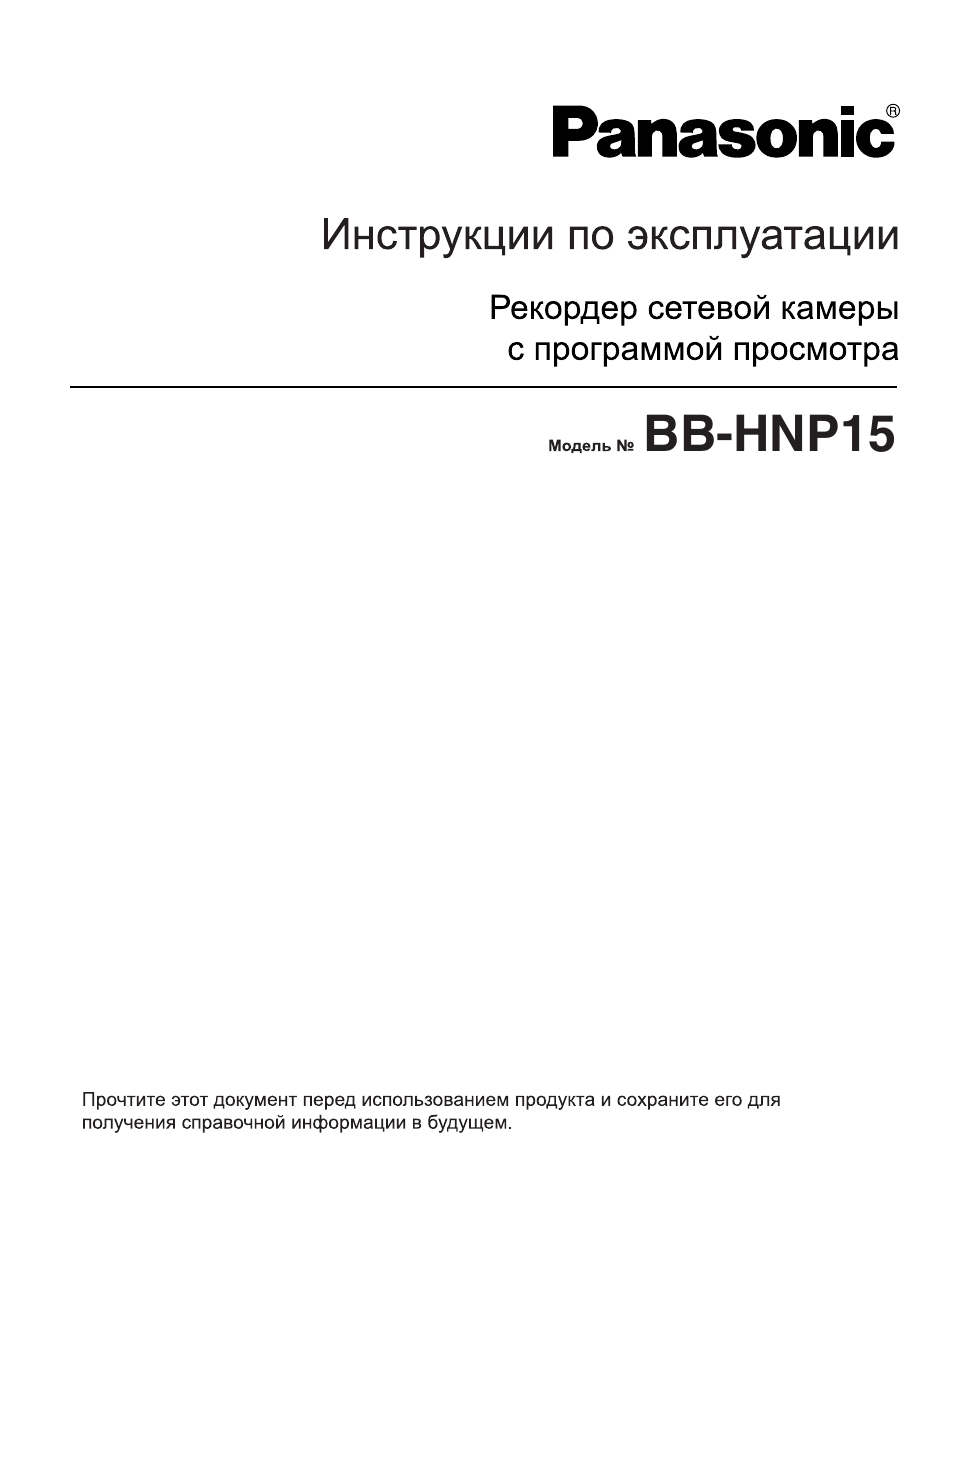 Инструкция по эксплуатации Panasonic BB-HNP15 | 193 страницы